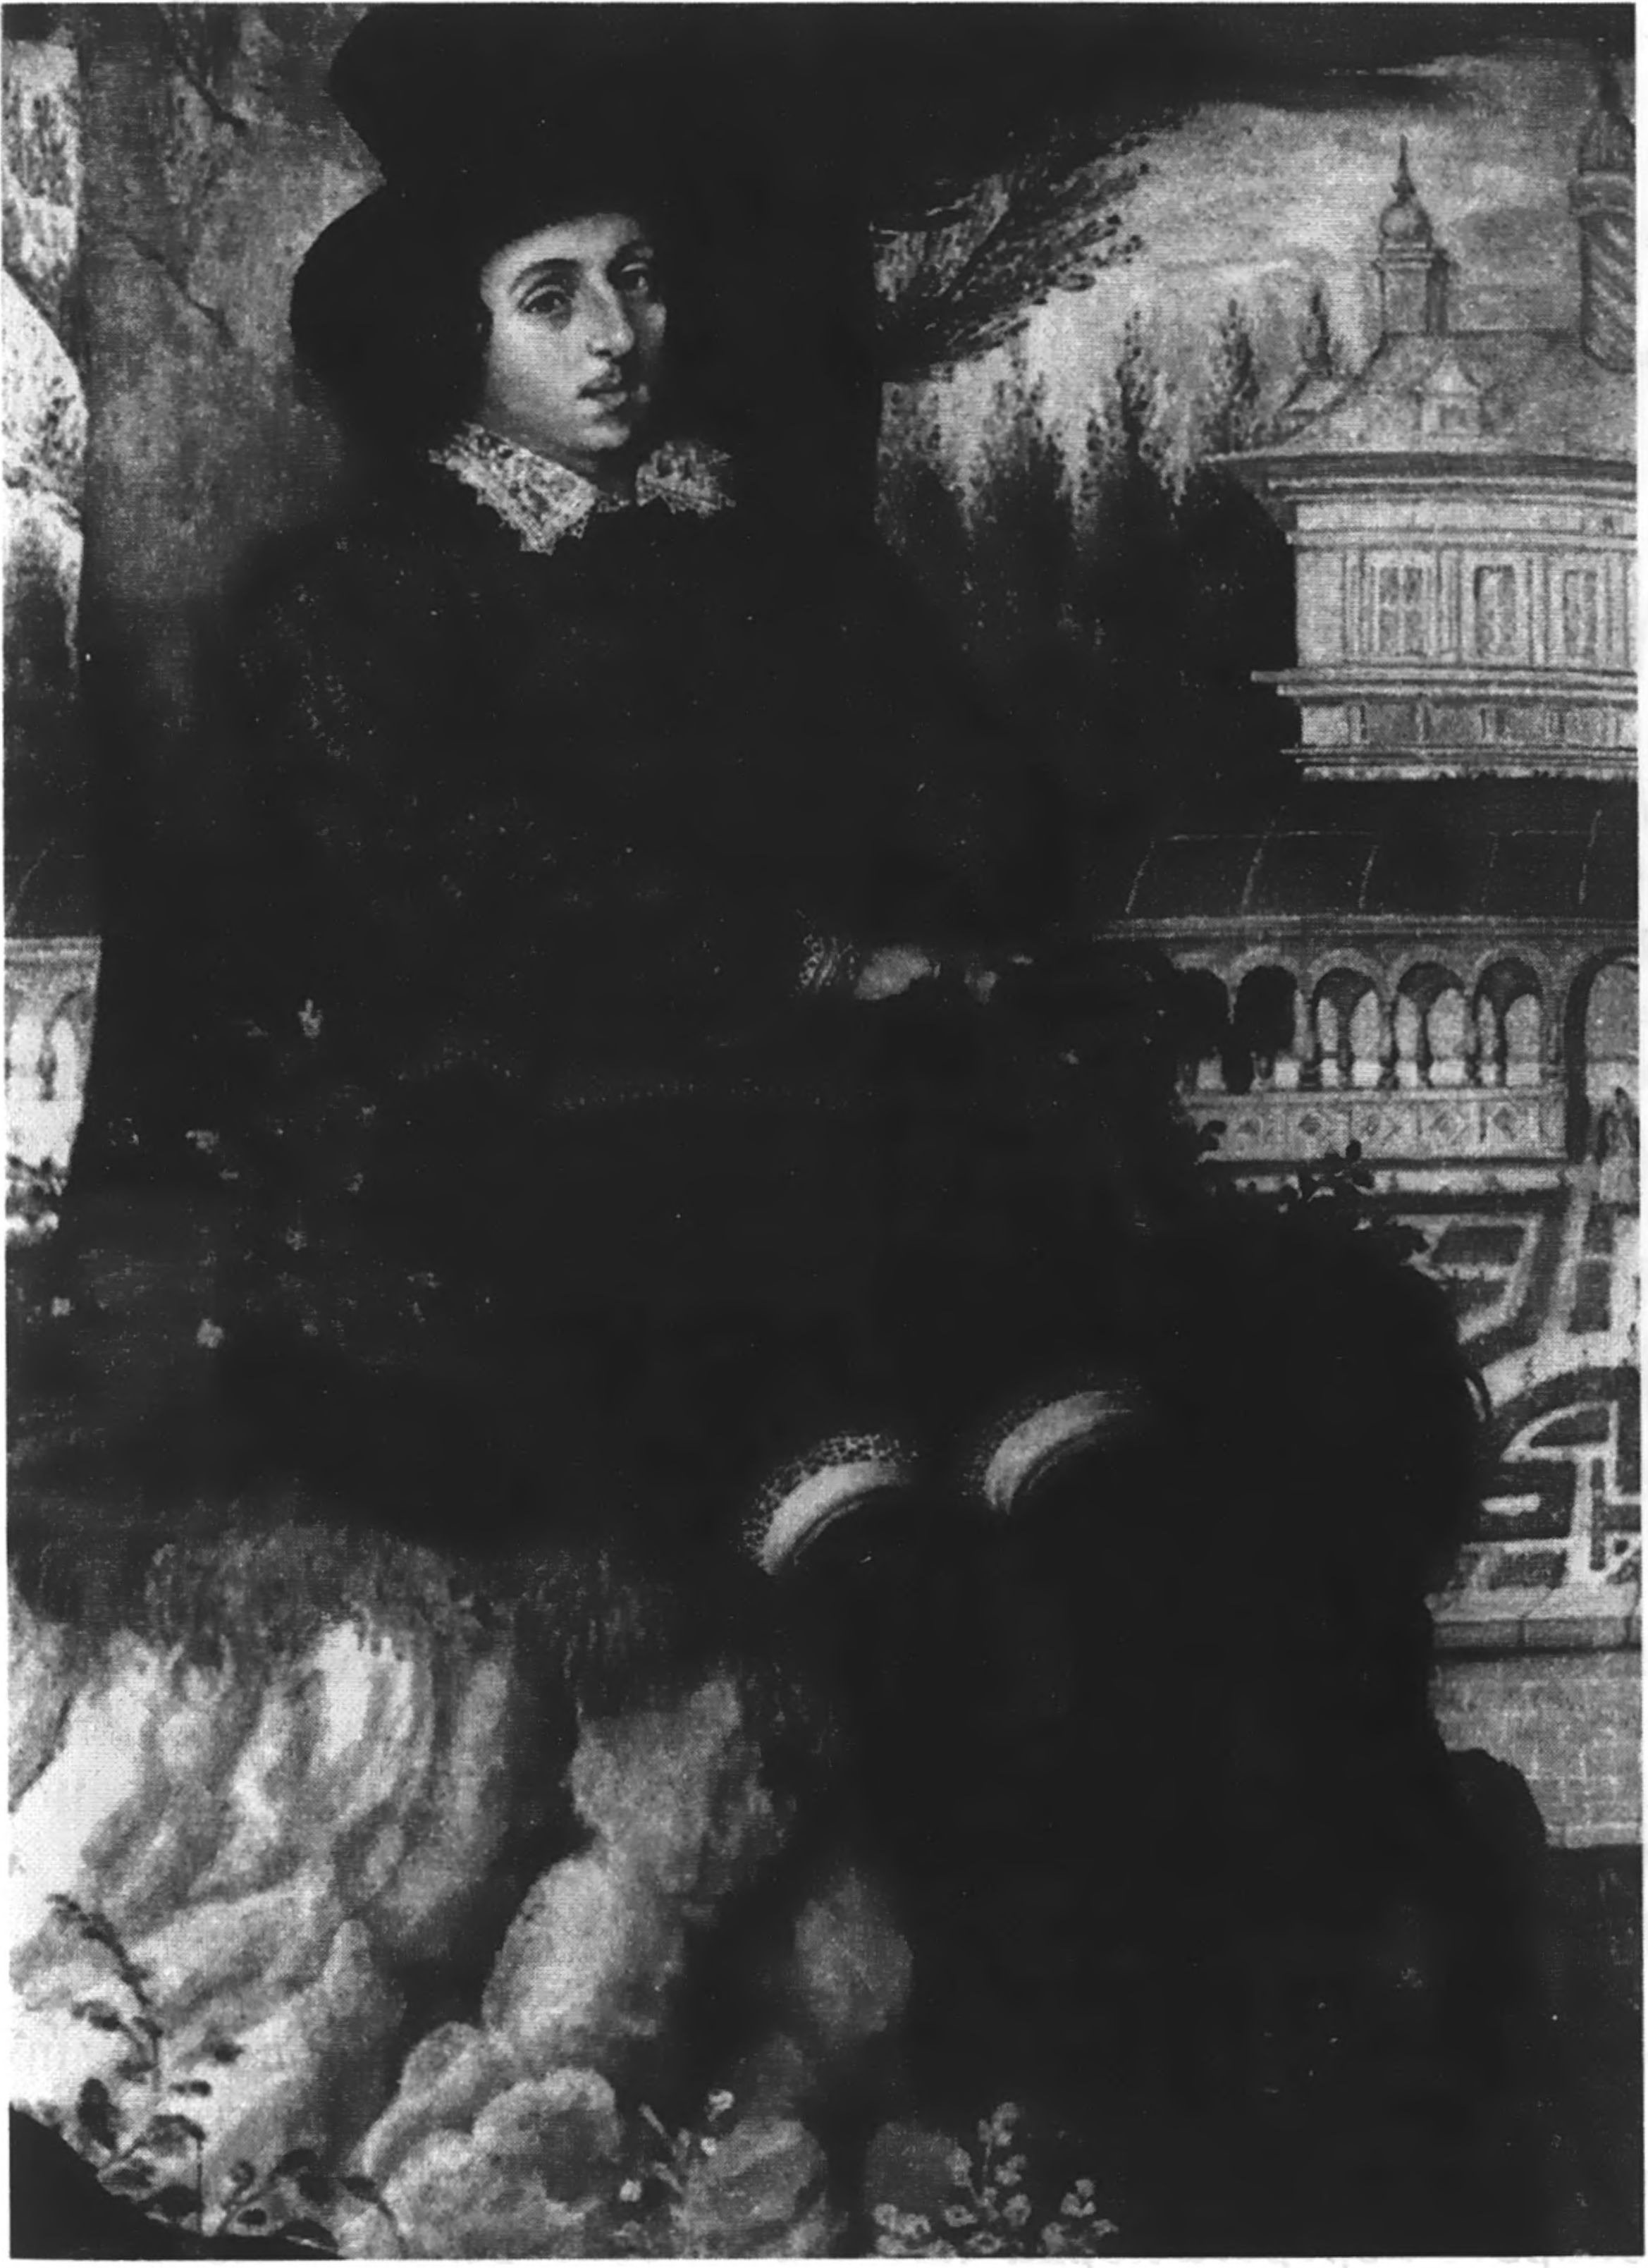 Портрет, долгое время считавшийся изображением Филипа Сидни. На самом деле это портрет молодого Рэтленда на фоне Падуанской уличной галереи